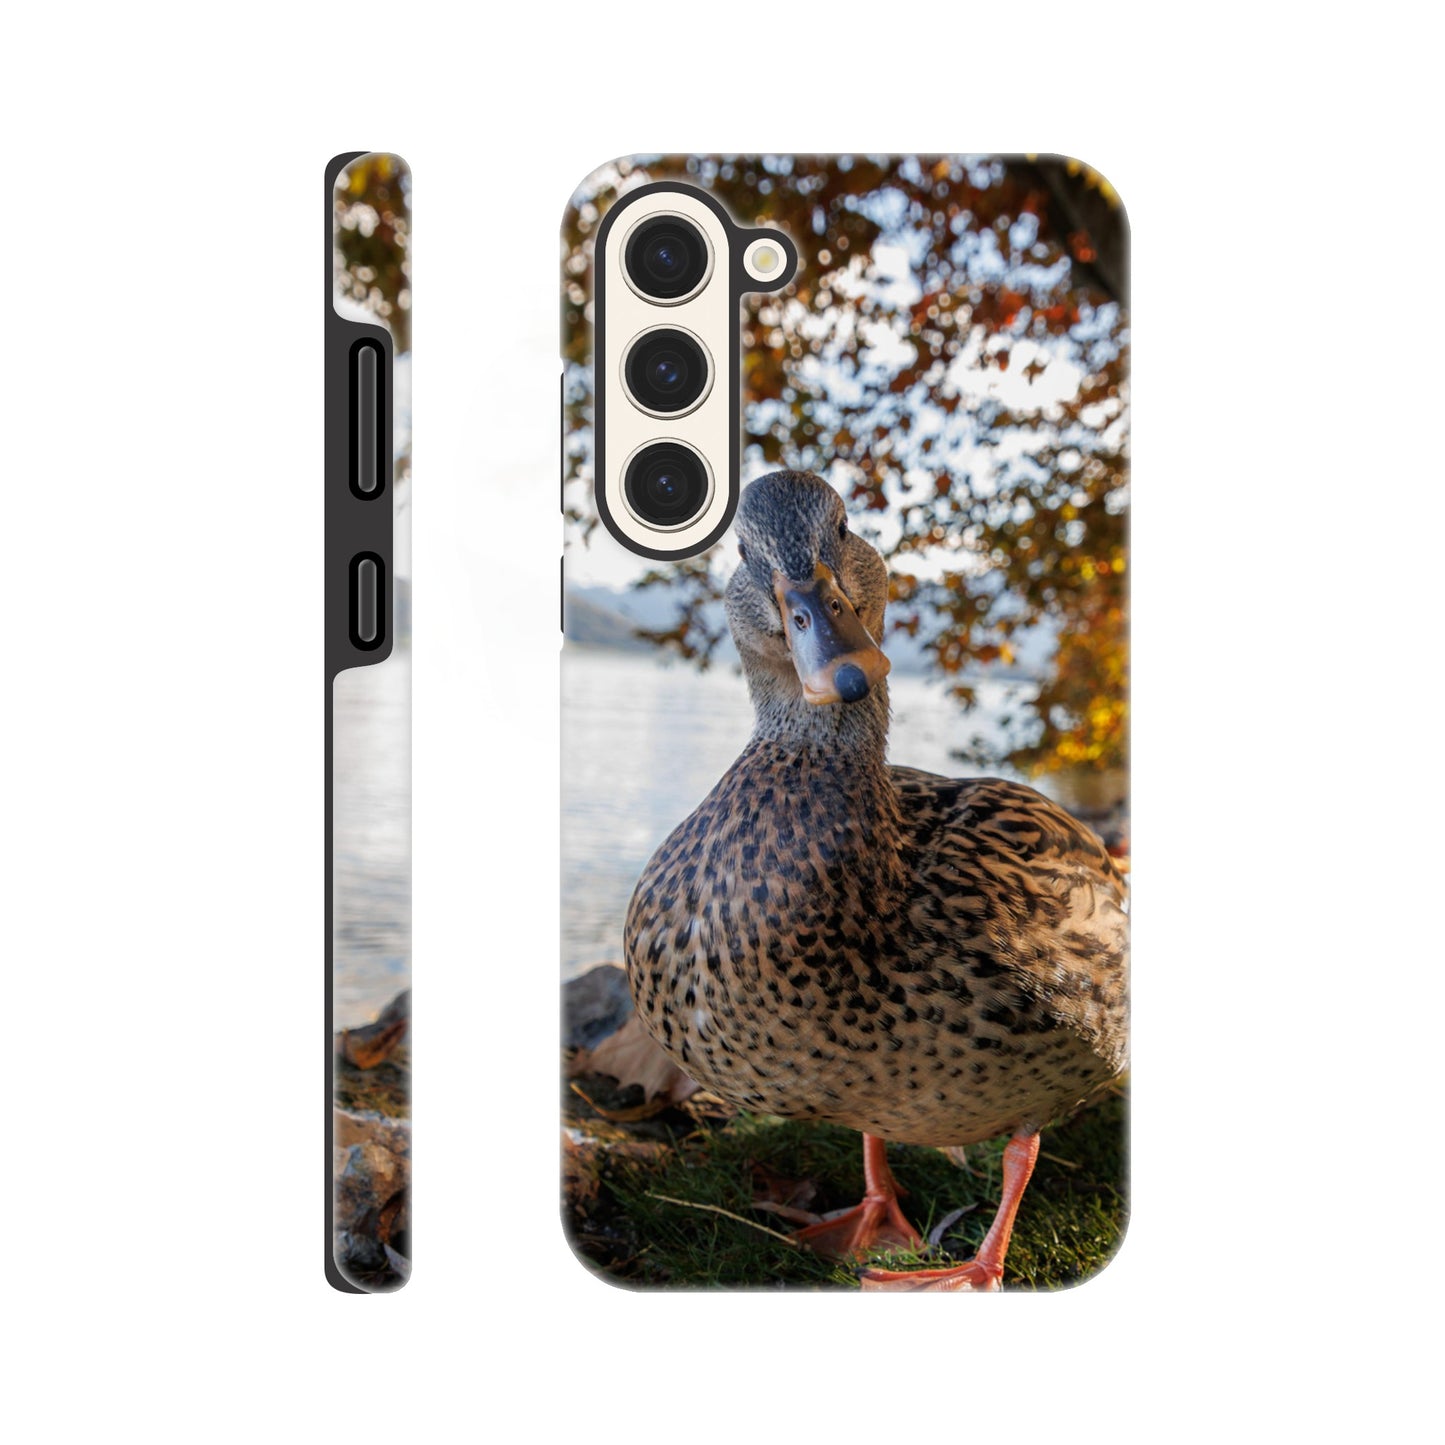 Herbstliche Entenidylle Hartschalen-Case Handyhülle für iPhone und Samsung